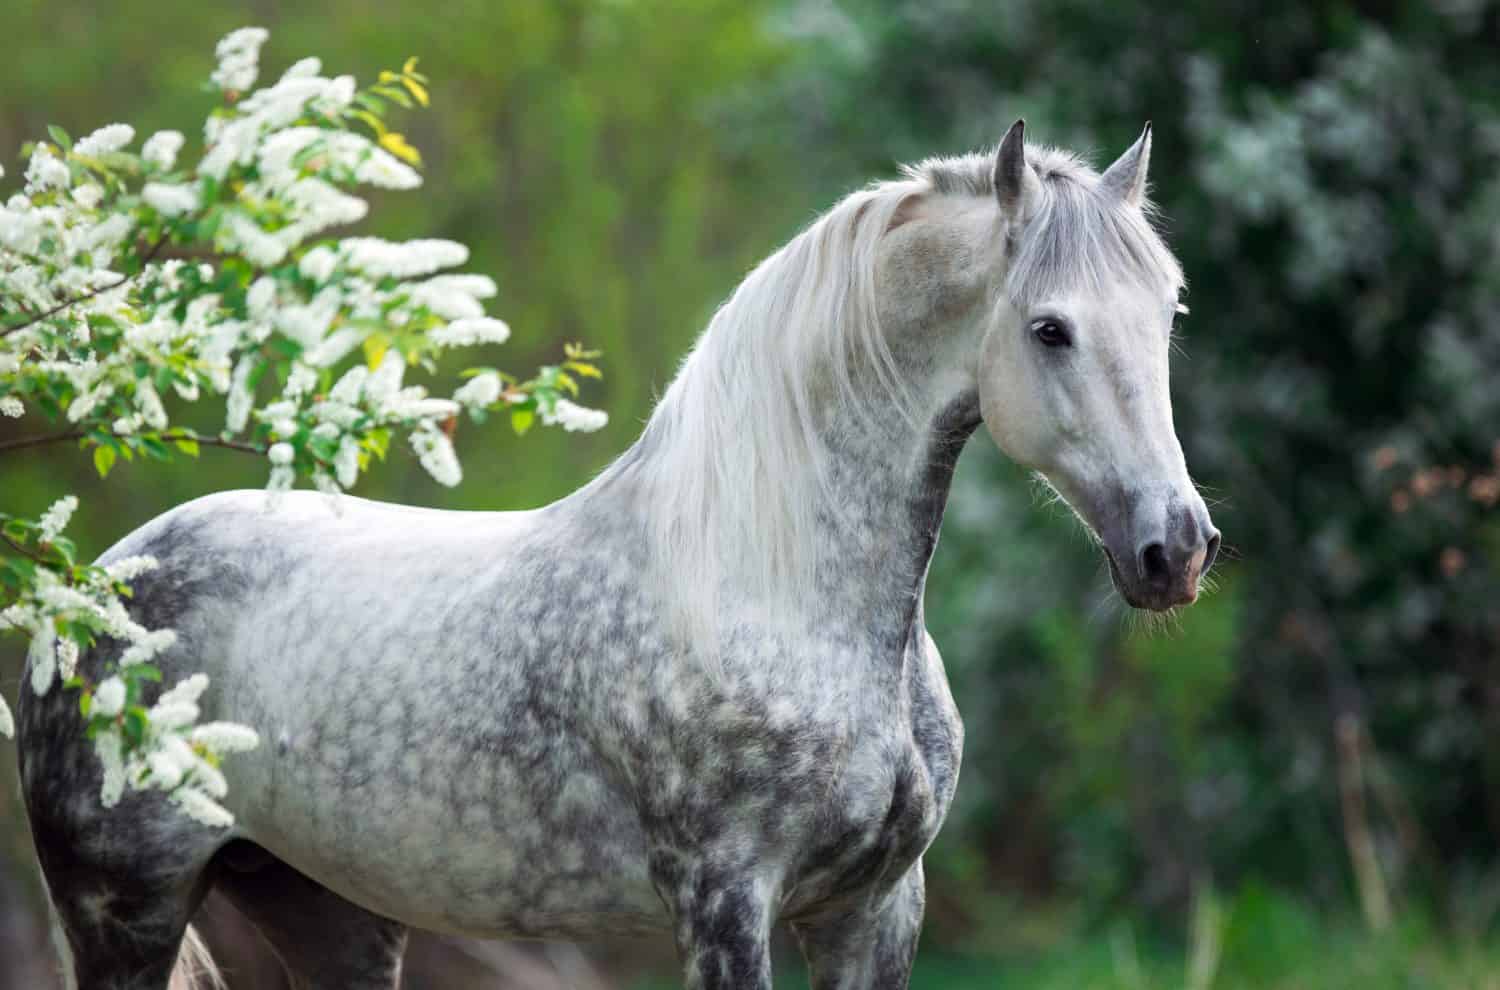 ritratto di un cavallo bianco grigio in estate in foglie verdi con fiori bianchi